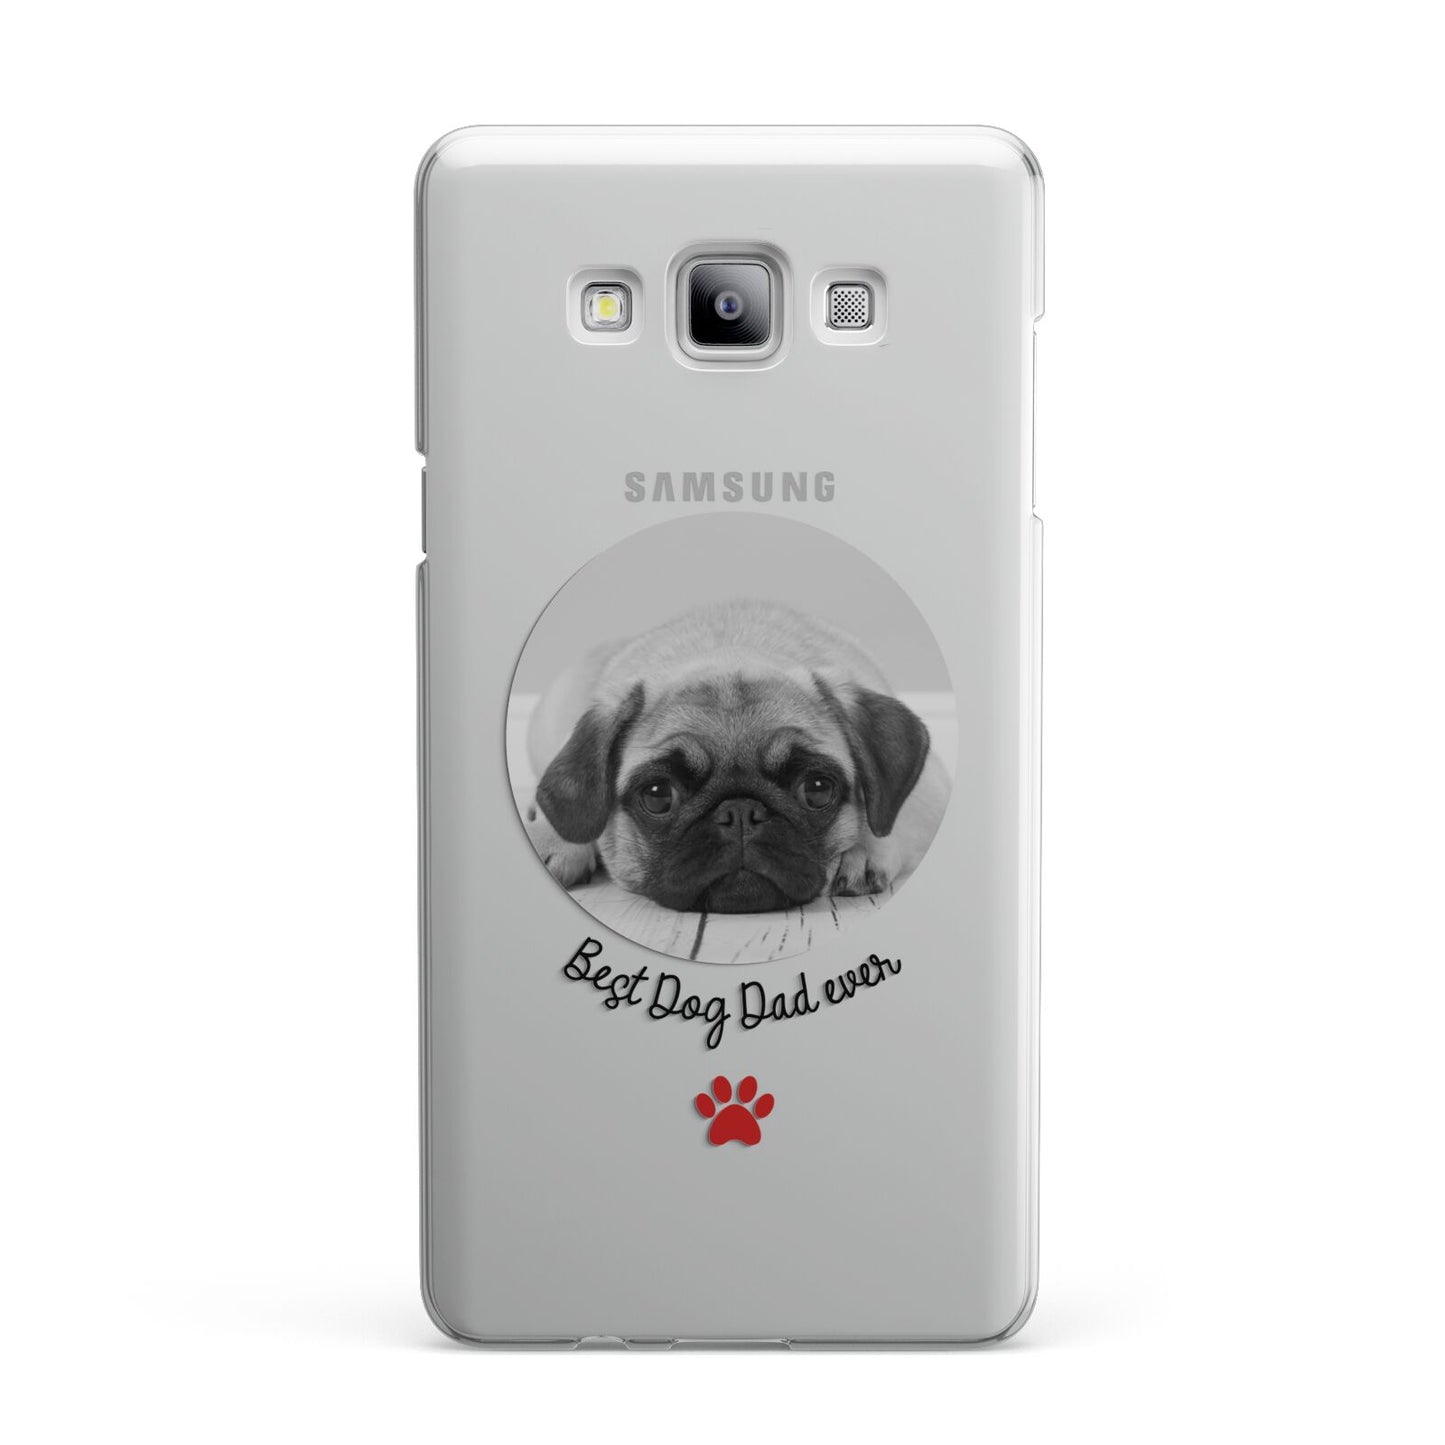 Best Dog Dad Ever Photo Upload Samsung Galaxy A7 2015 Case